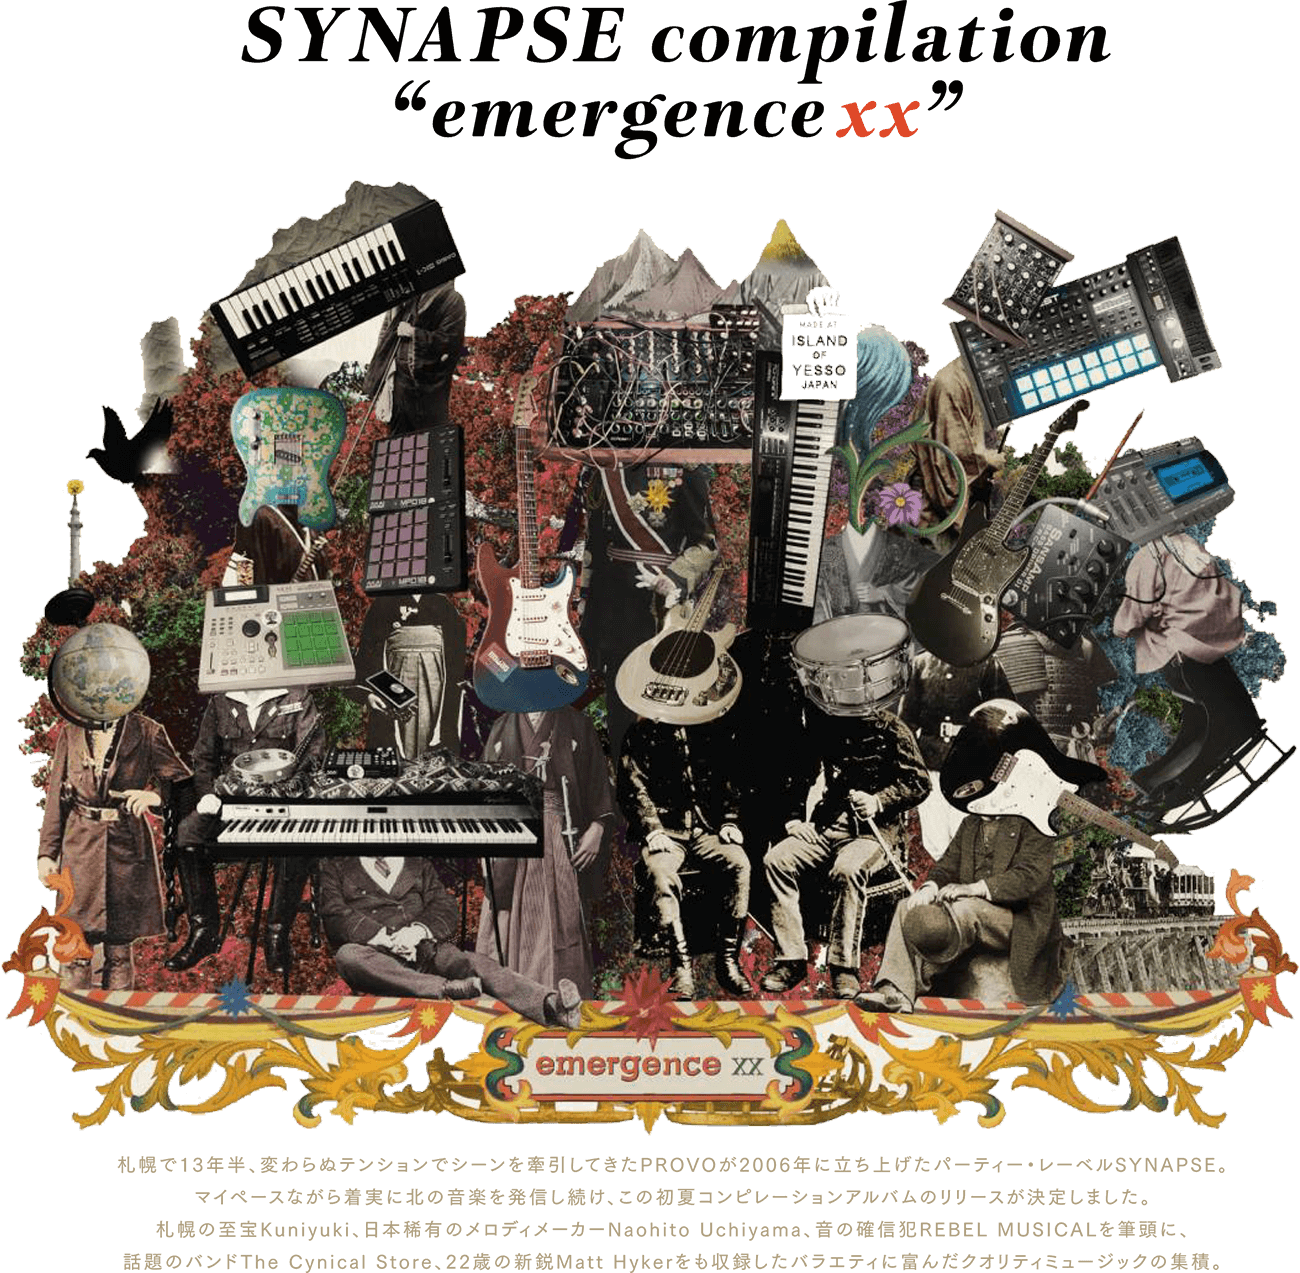 SYNAPSE compilation emergence xx  札幌で13年半、変わらぬテンションでシーンを牽引してきたPROVOが2006年に立ち上げたパーティー・レーベルSYNAPSE。 マイペースながら着実に北の音楽を発信し続け、この初夏コンピレーションアルバムのリリースが決定しました。 札幌の至宝Kuniyuki、日本稀有のメロディメーカーNaohito Uchiyama、音の確信犯REBEL MUSICALを筆頭に、 話題のバンドThe Cynical Store、22歳の新鋭Matt Hykerをも収録したバラエティに富んだクオリティミュージックの集積。